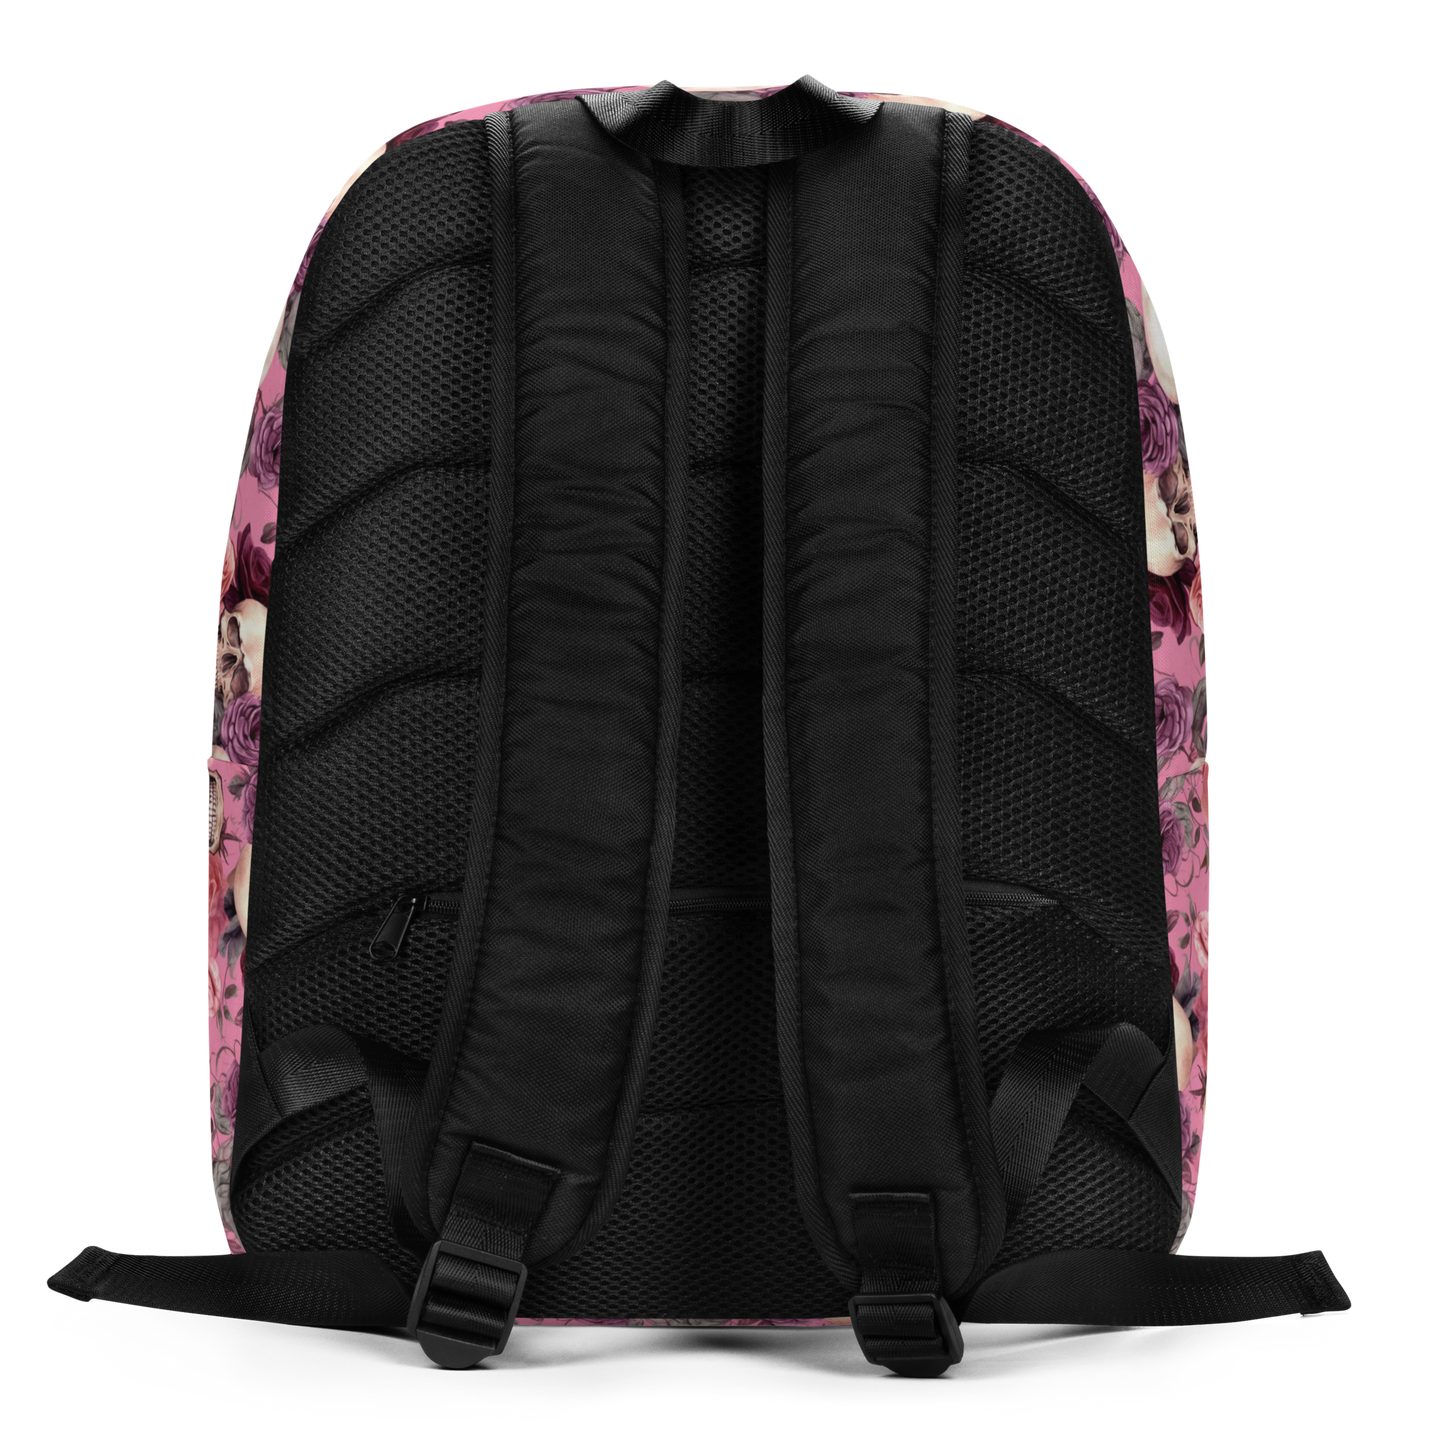 Dead Flower Minimalist Backpack, Backpack with 15" inside pocket for Laptop, Hidden Pocket for Wallet, Lightweight well made